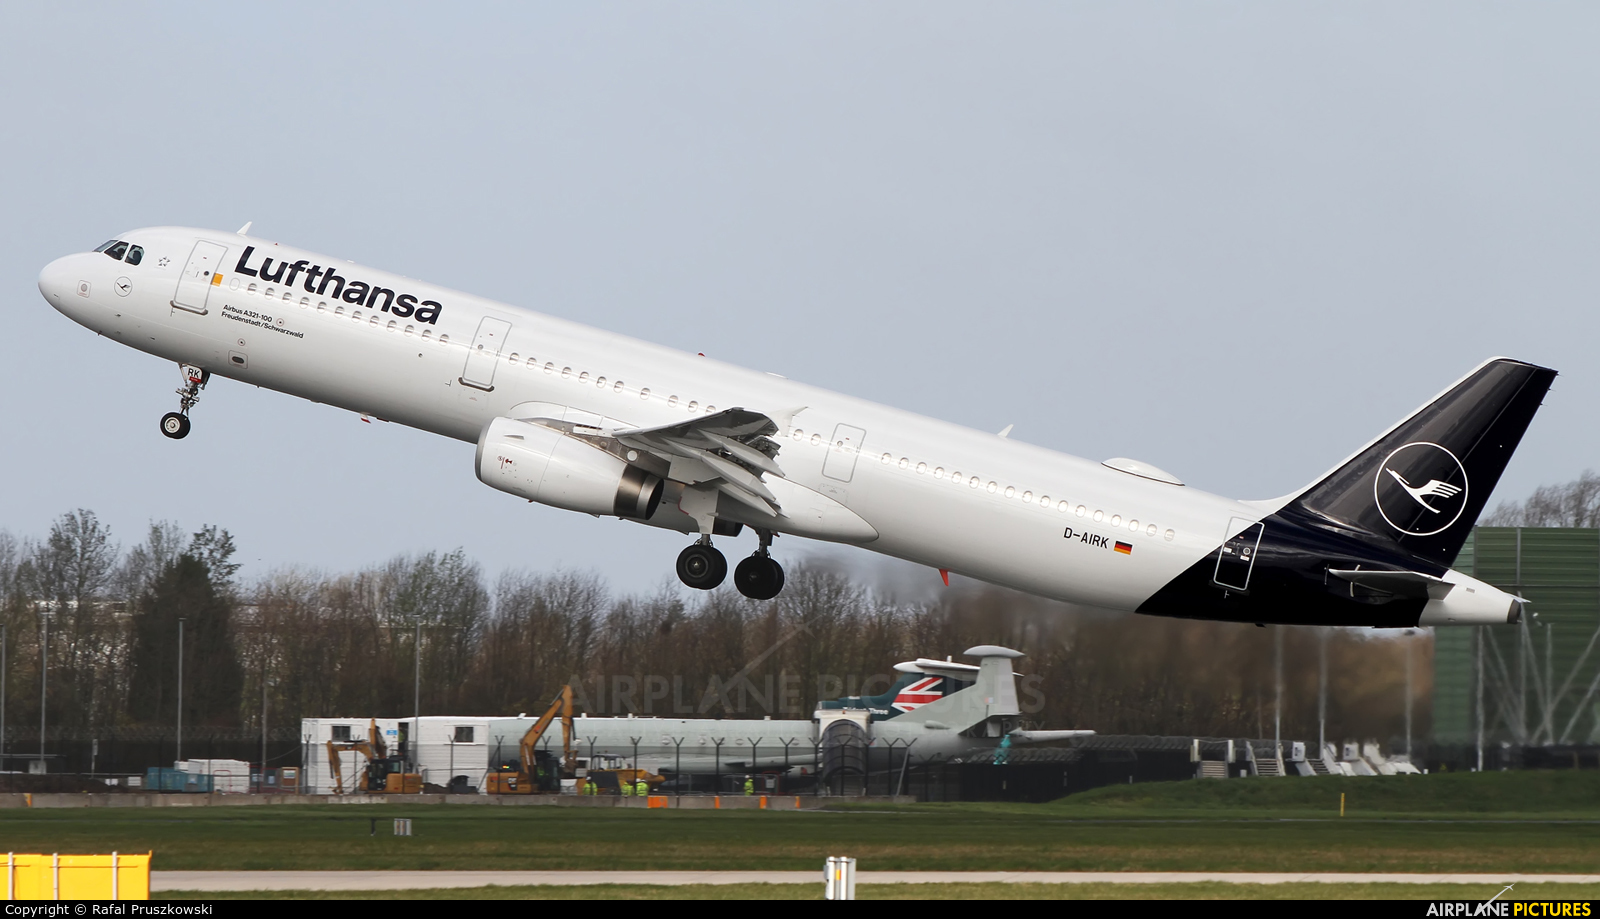 Lufthansa D-AIRK aircraft at Manchester